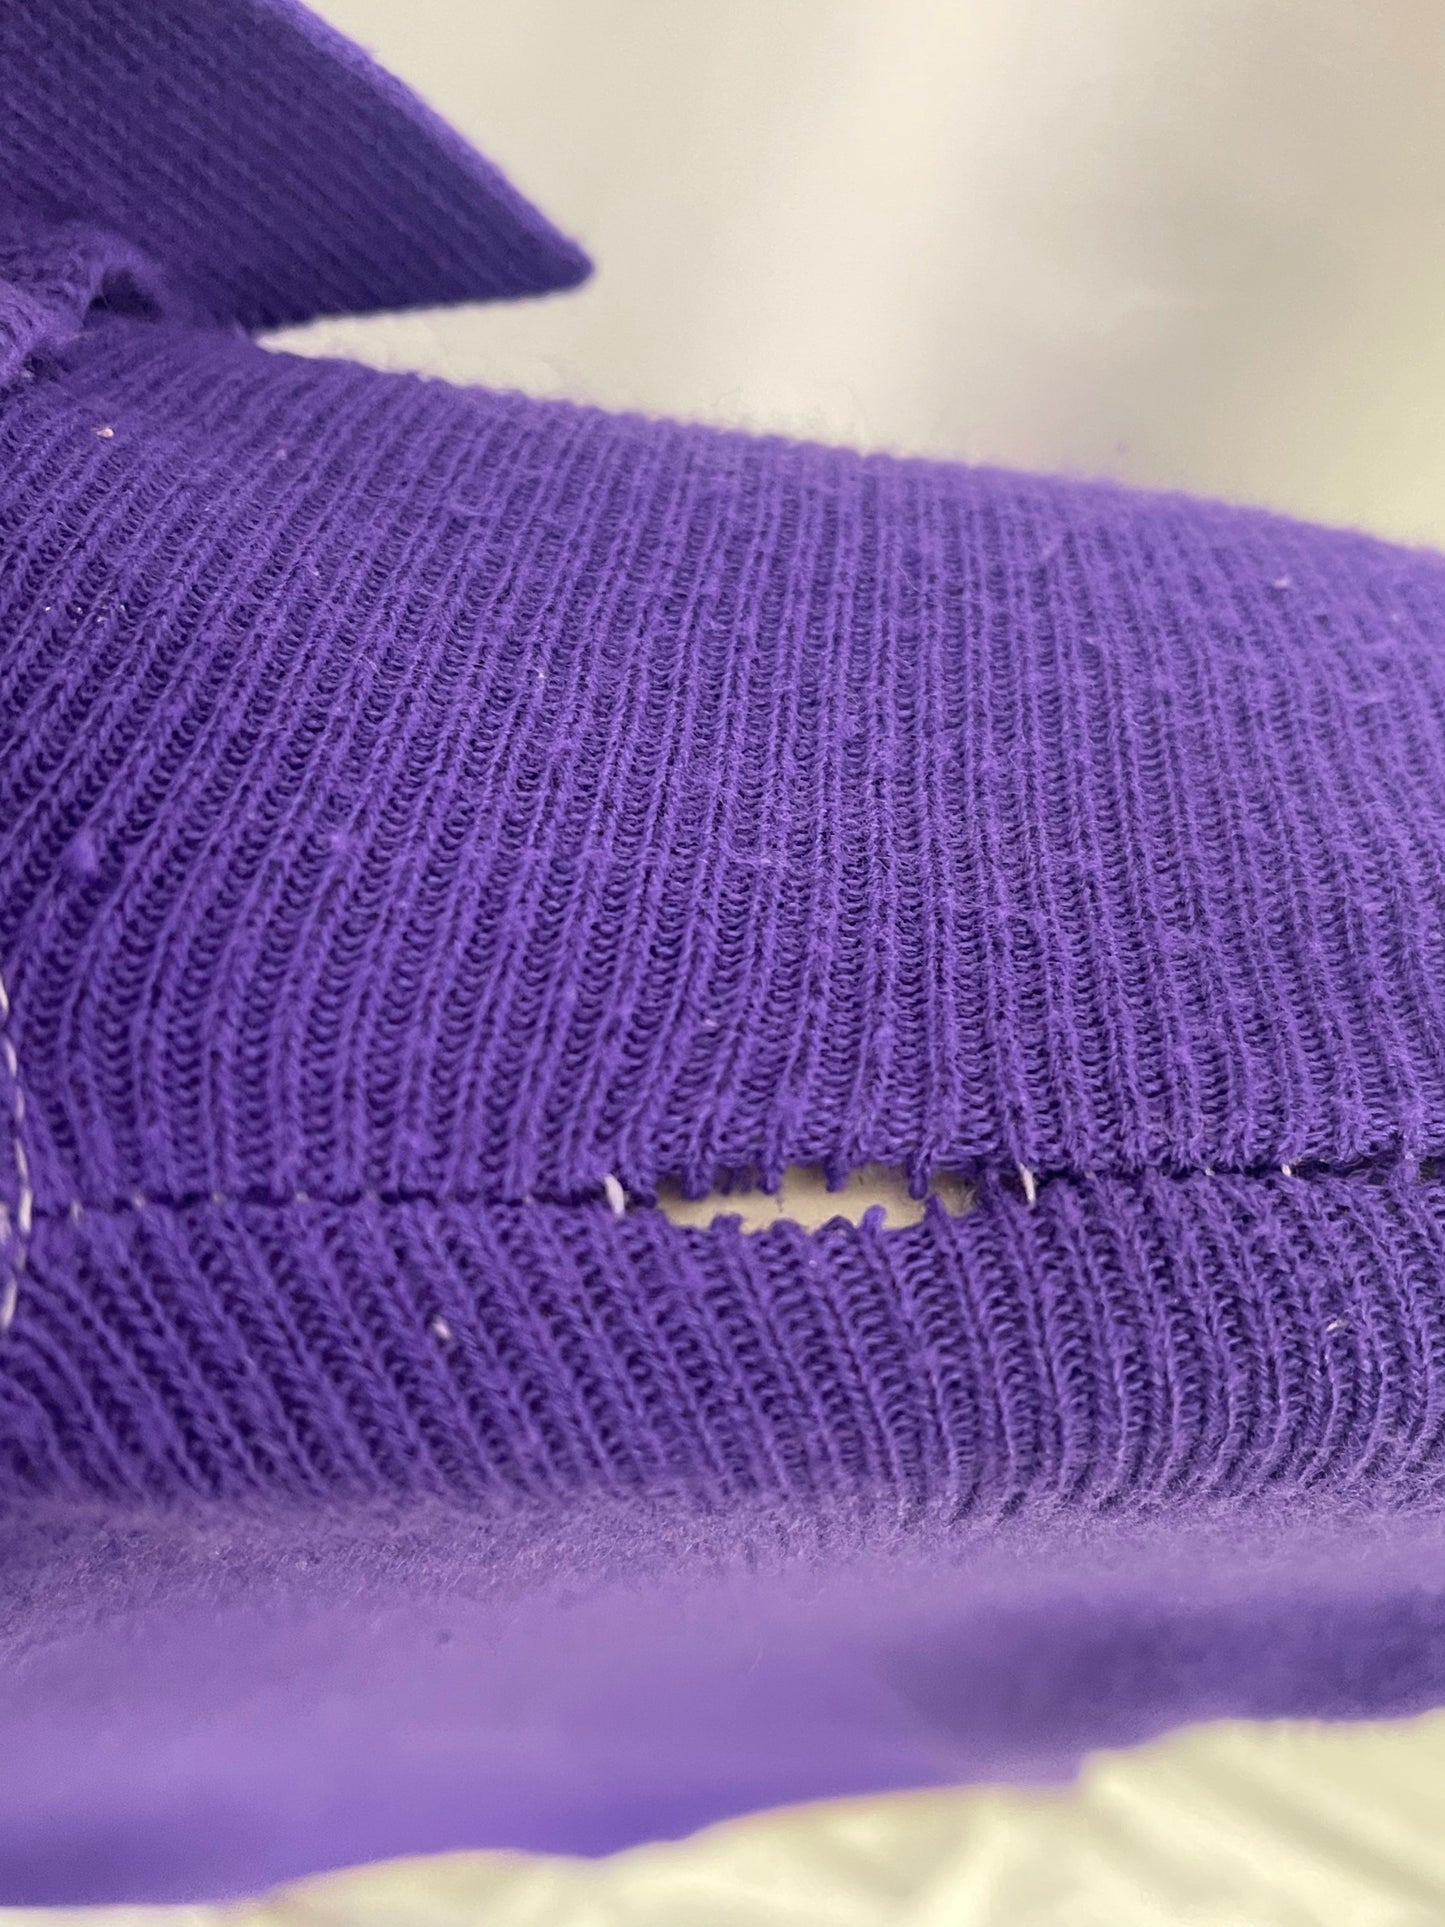 Vintage Sears purple sweater